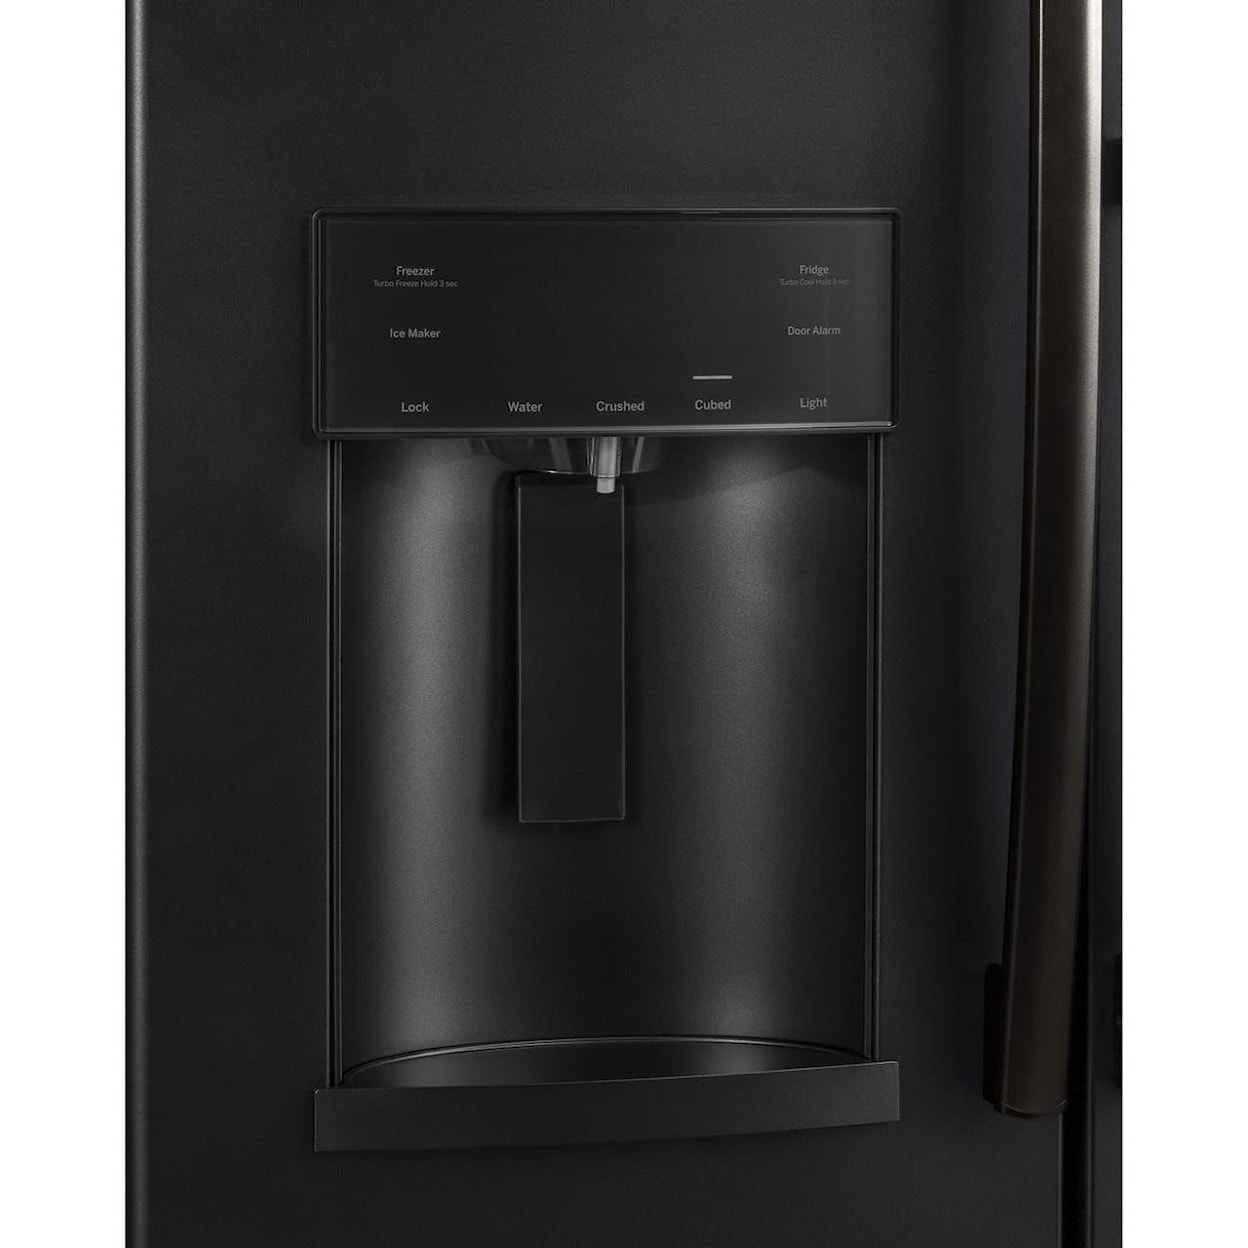 GE Appliances GE French Door Refrigerators GE® ENERGY STAR® 27.7 Cu. Ft. French-Door Re